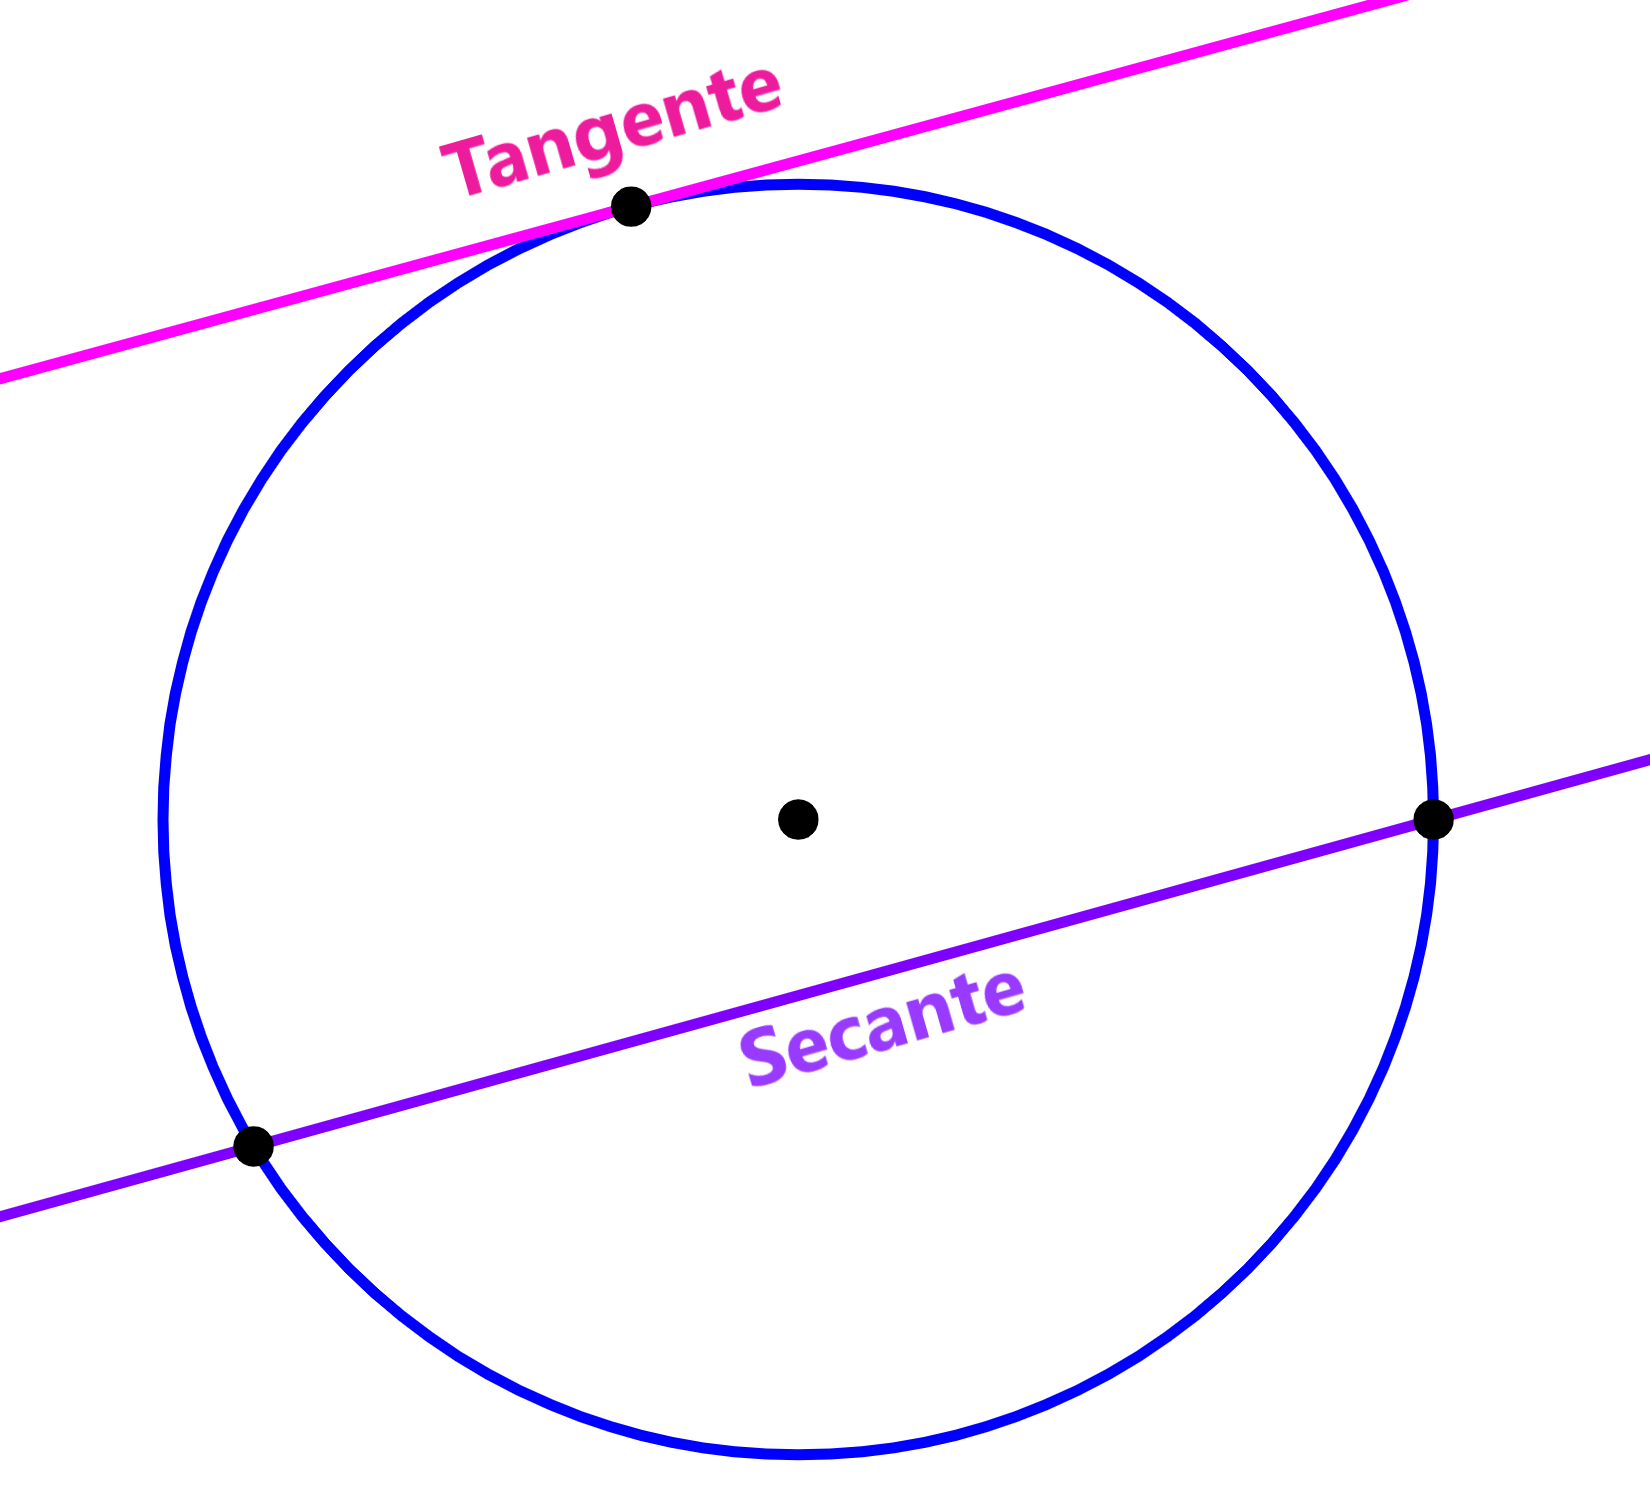 diagrama de tangente y secante de circunferencia